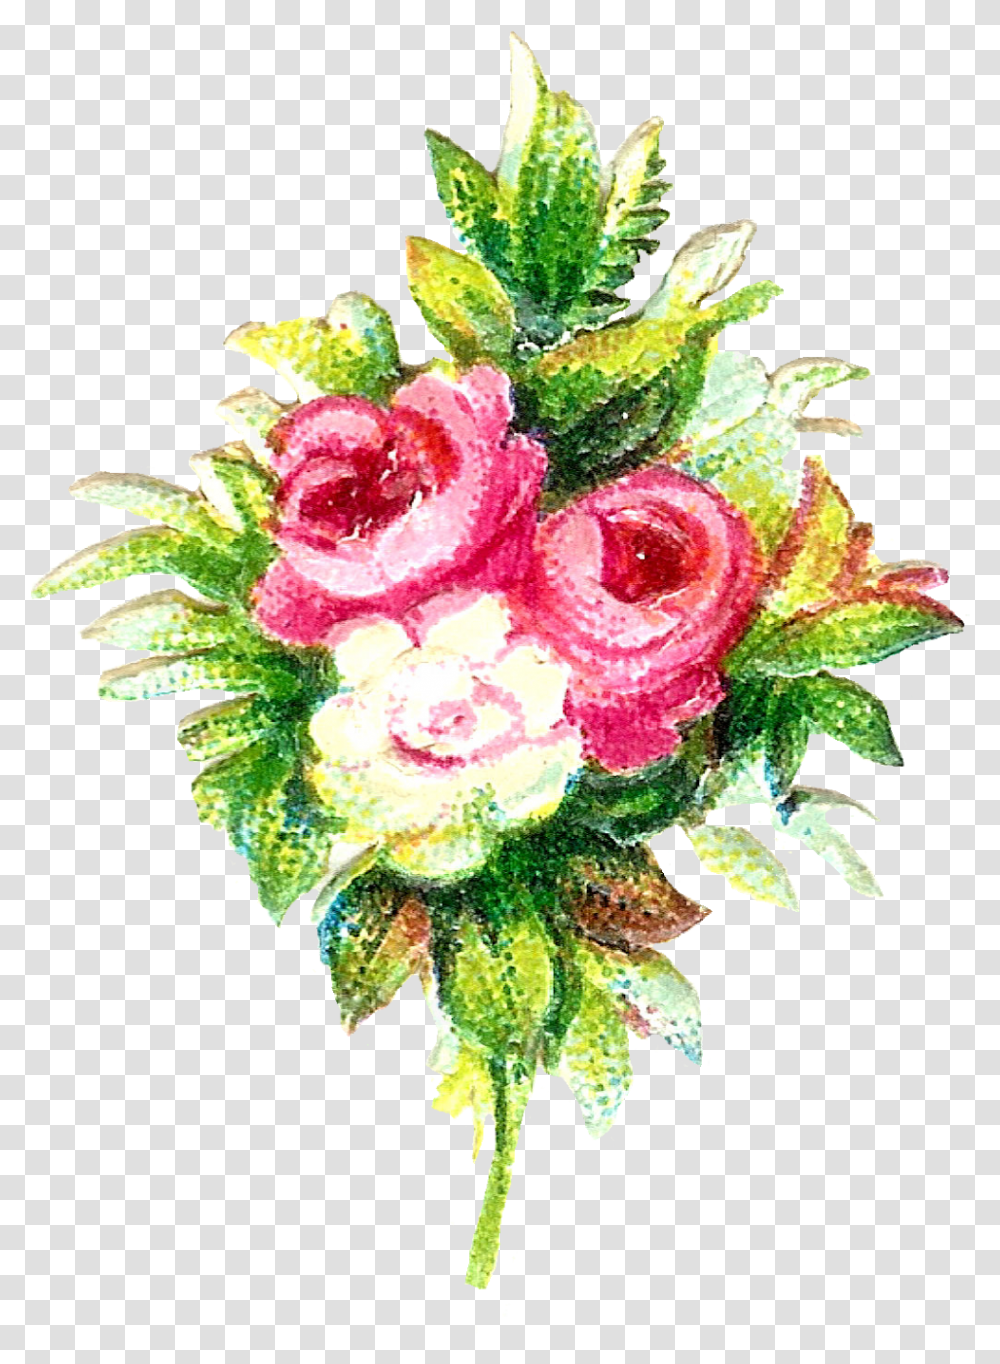 Free Flower Graphic Flower, Plant, Blossom, Flower Bouquet, Flower Arrangement Transparent Png